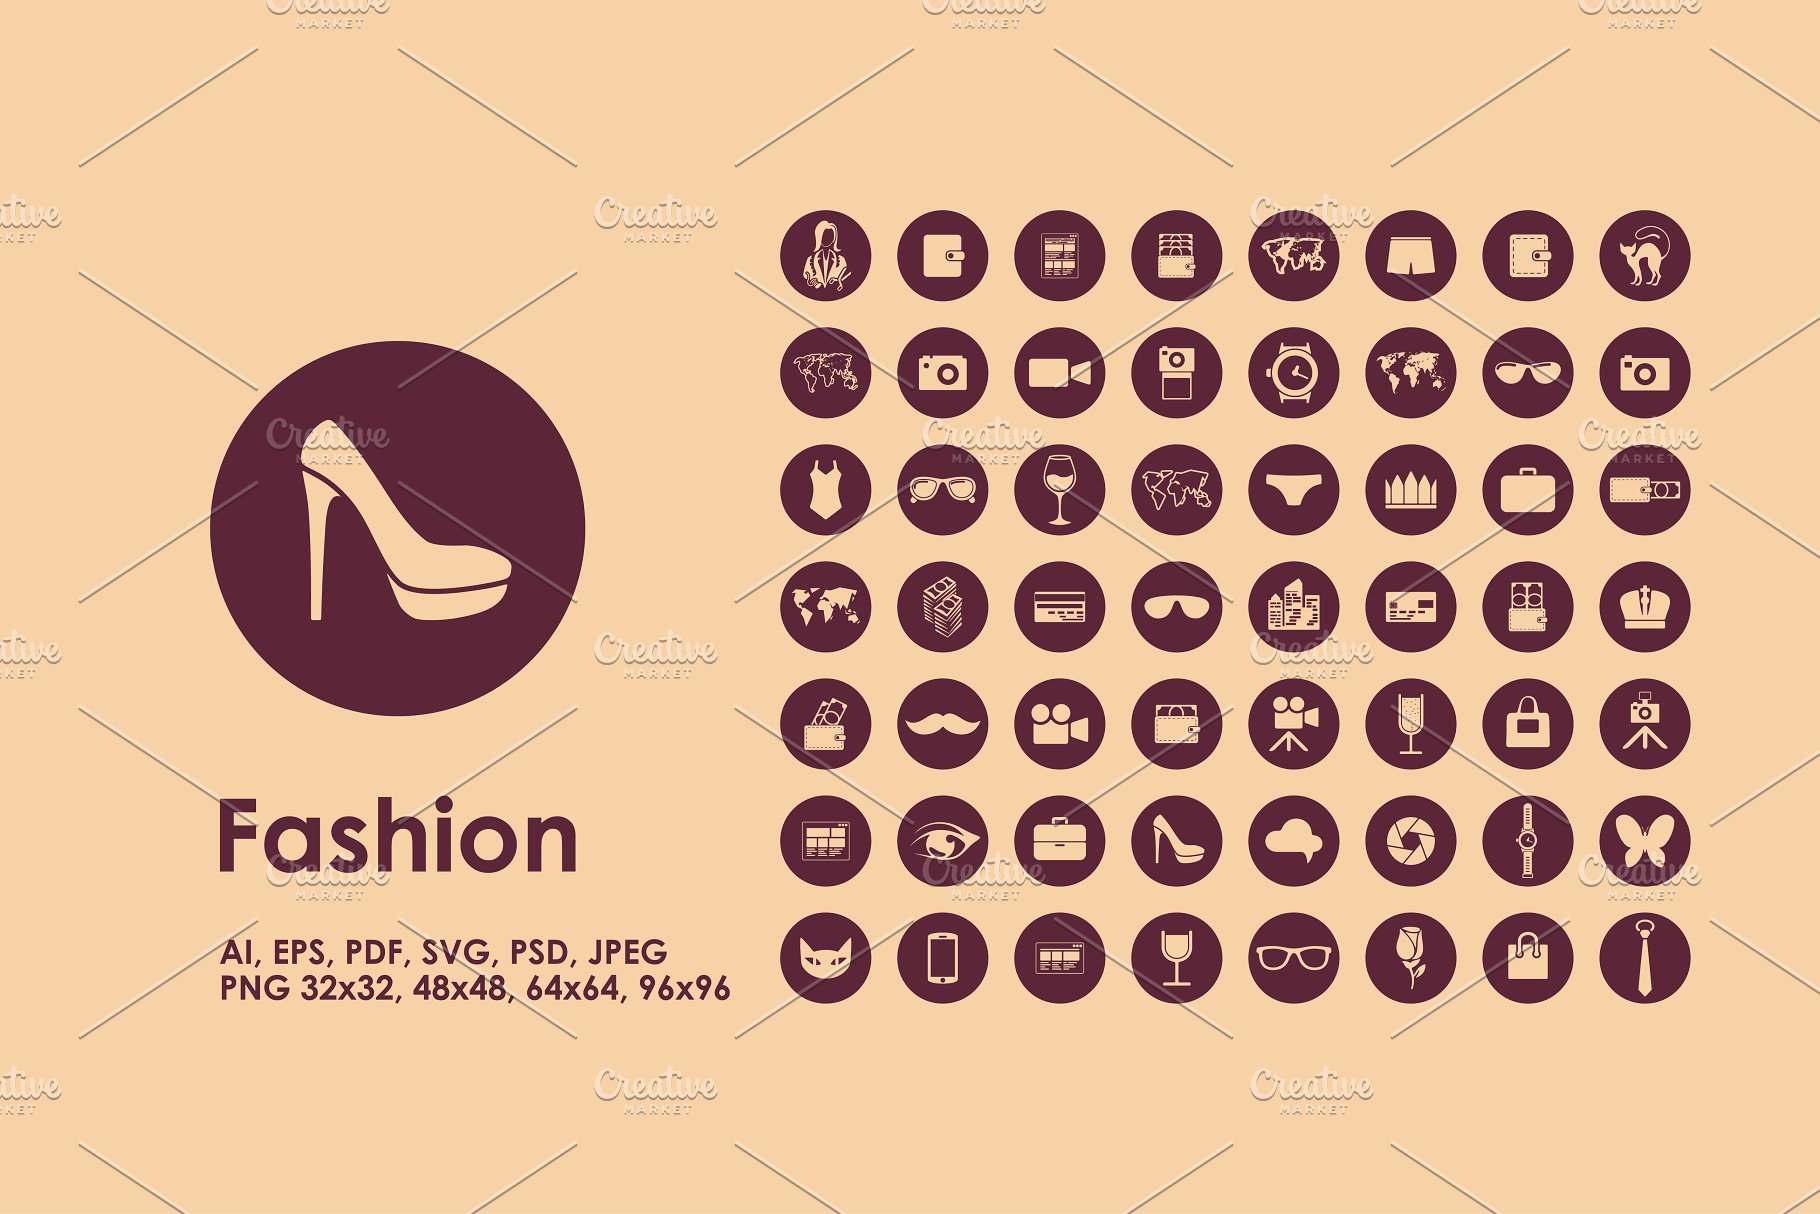 时尚元素app图标 Fashion icons #13698